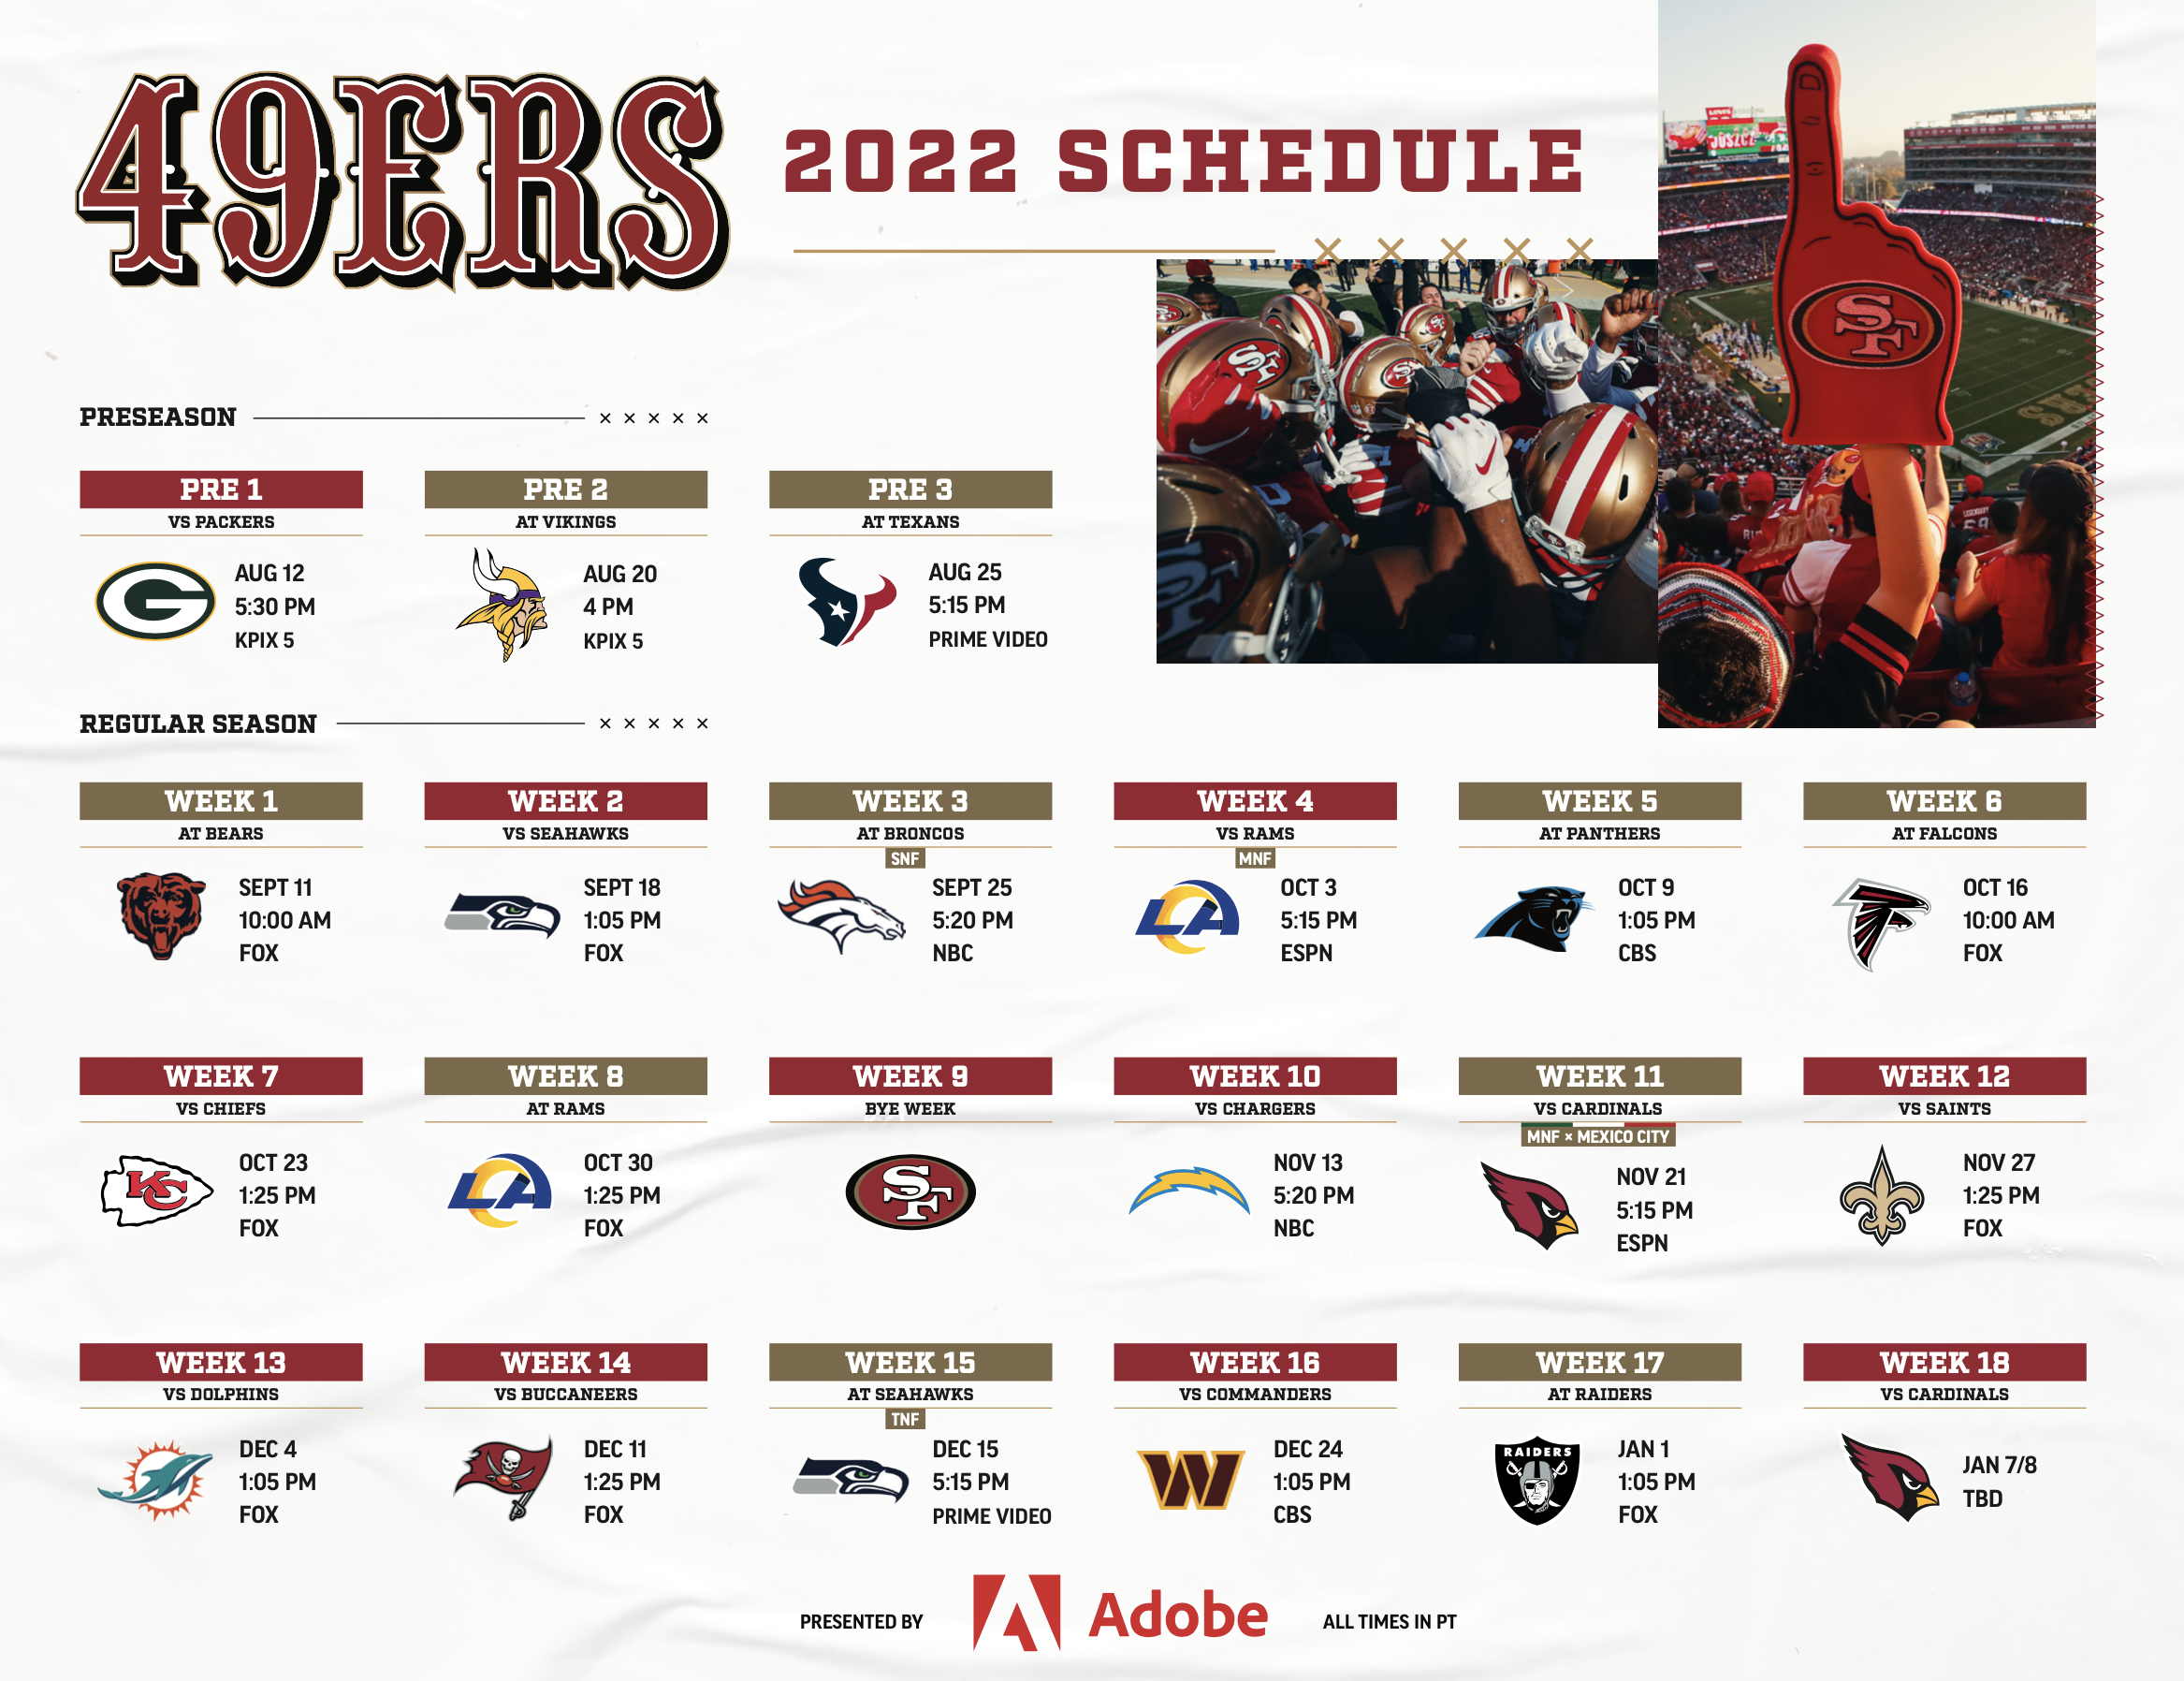 Actualizar 50+ imagen 49ers schedule at levi’s stadium